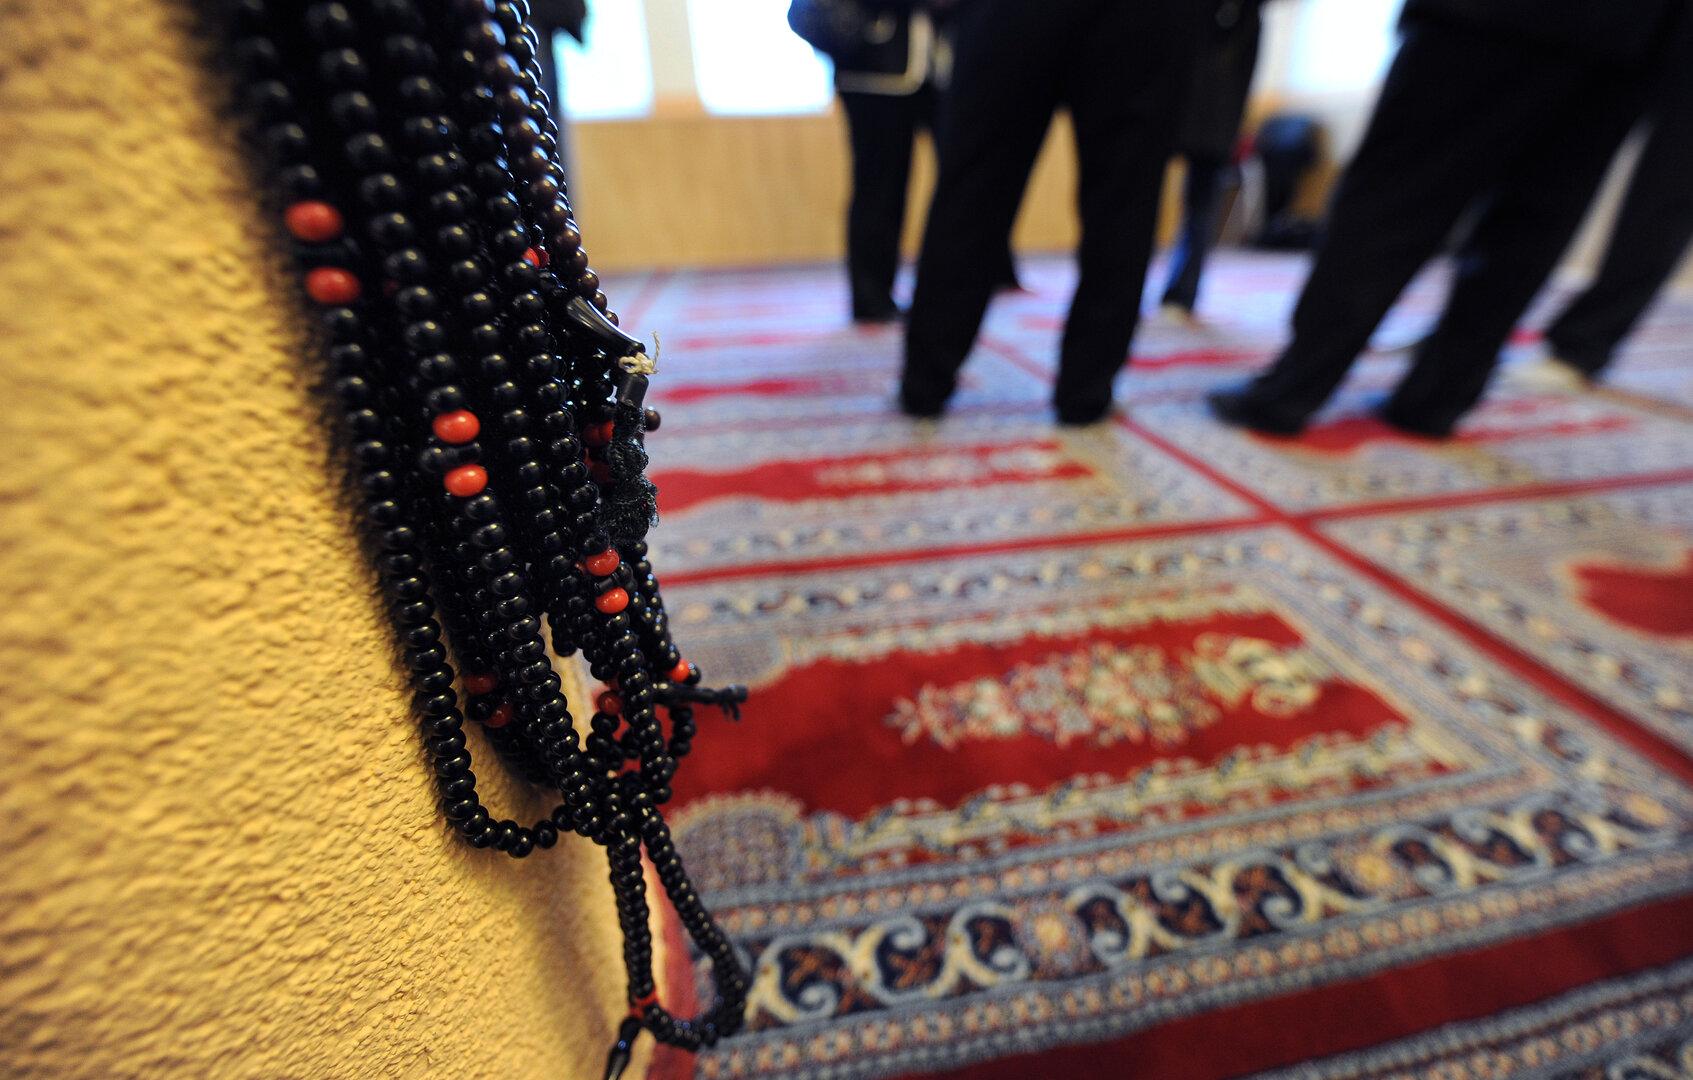 Islam-Verein in Wien soll "islamischen Weltstaat" zum Ziel haben